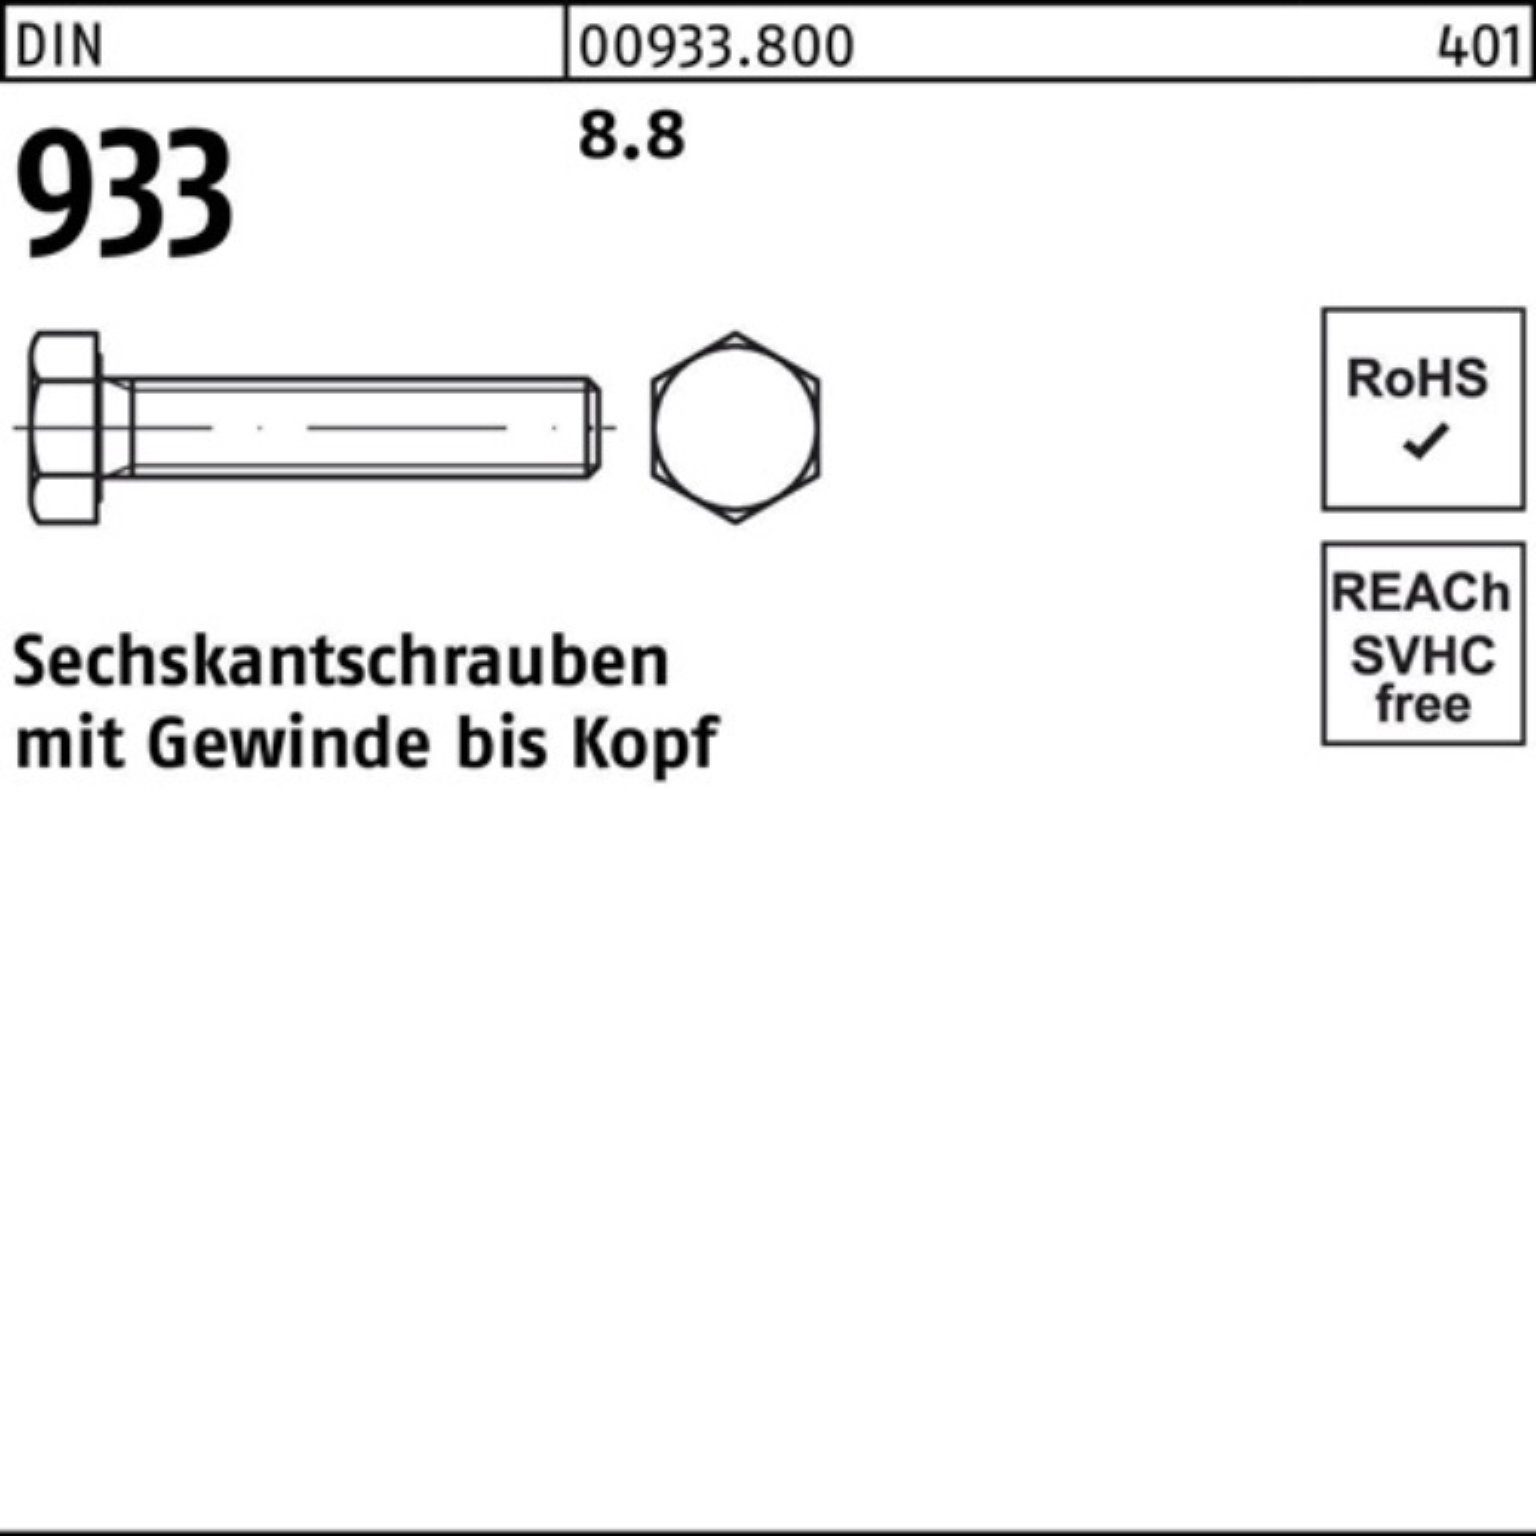 Pack DIN 1 160 Sechskantschraube VG Sechskantschraube 100er 8.8 Reyher Stück 933 933 M33x DIN